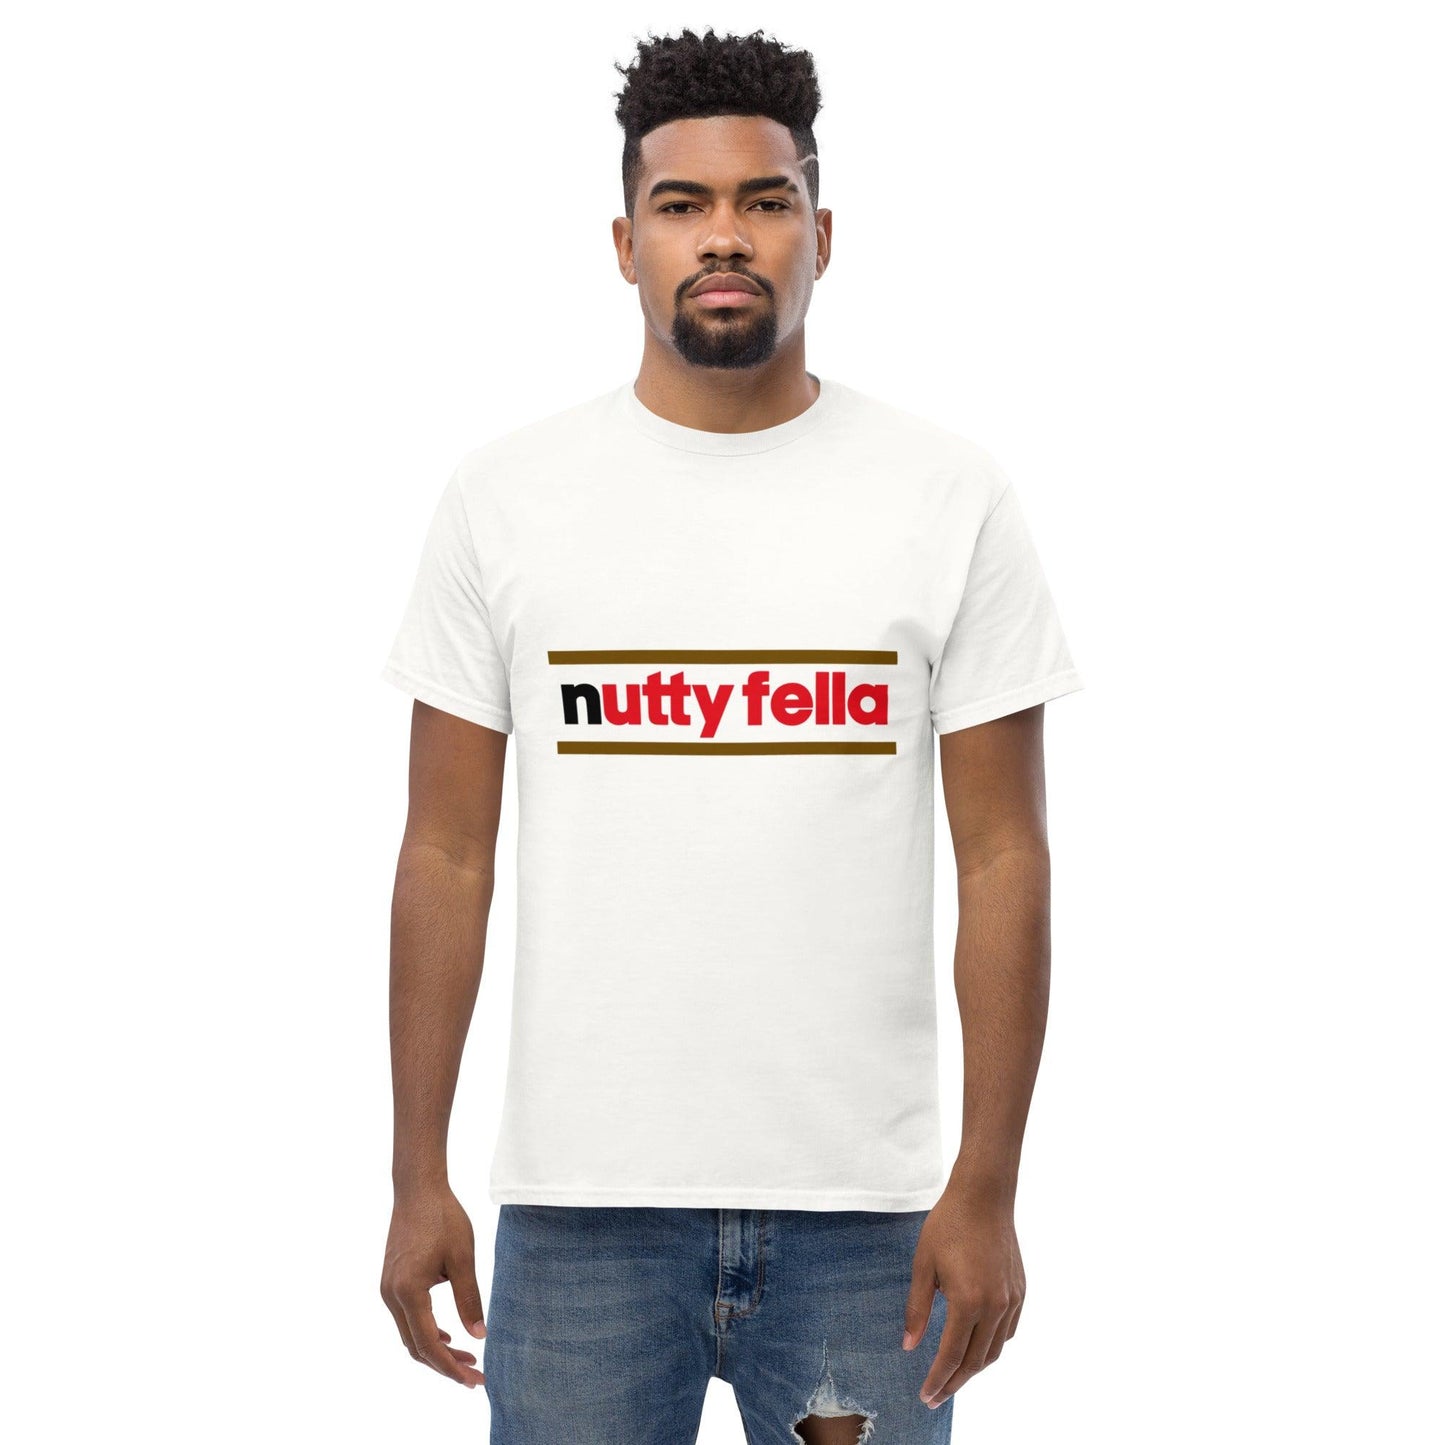 NUTTY FELLA - Anarchyca-clothing